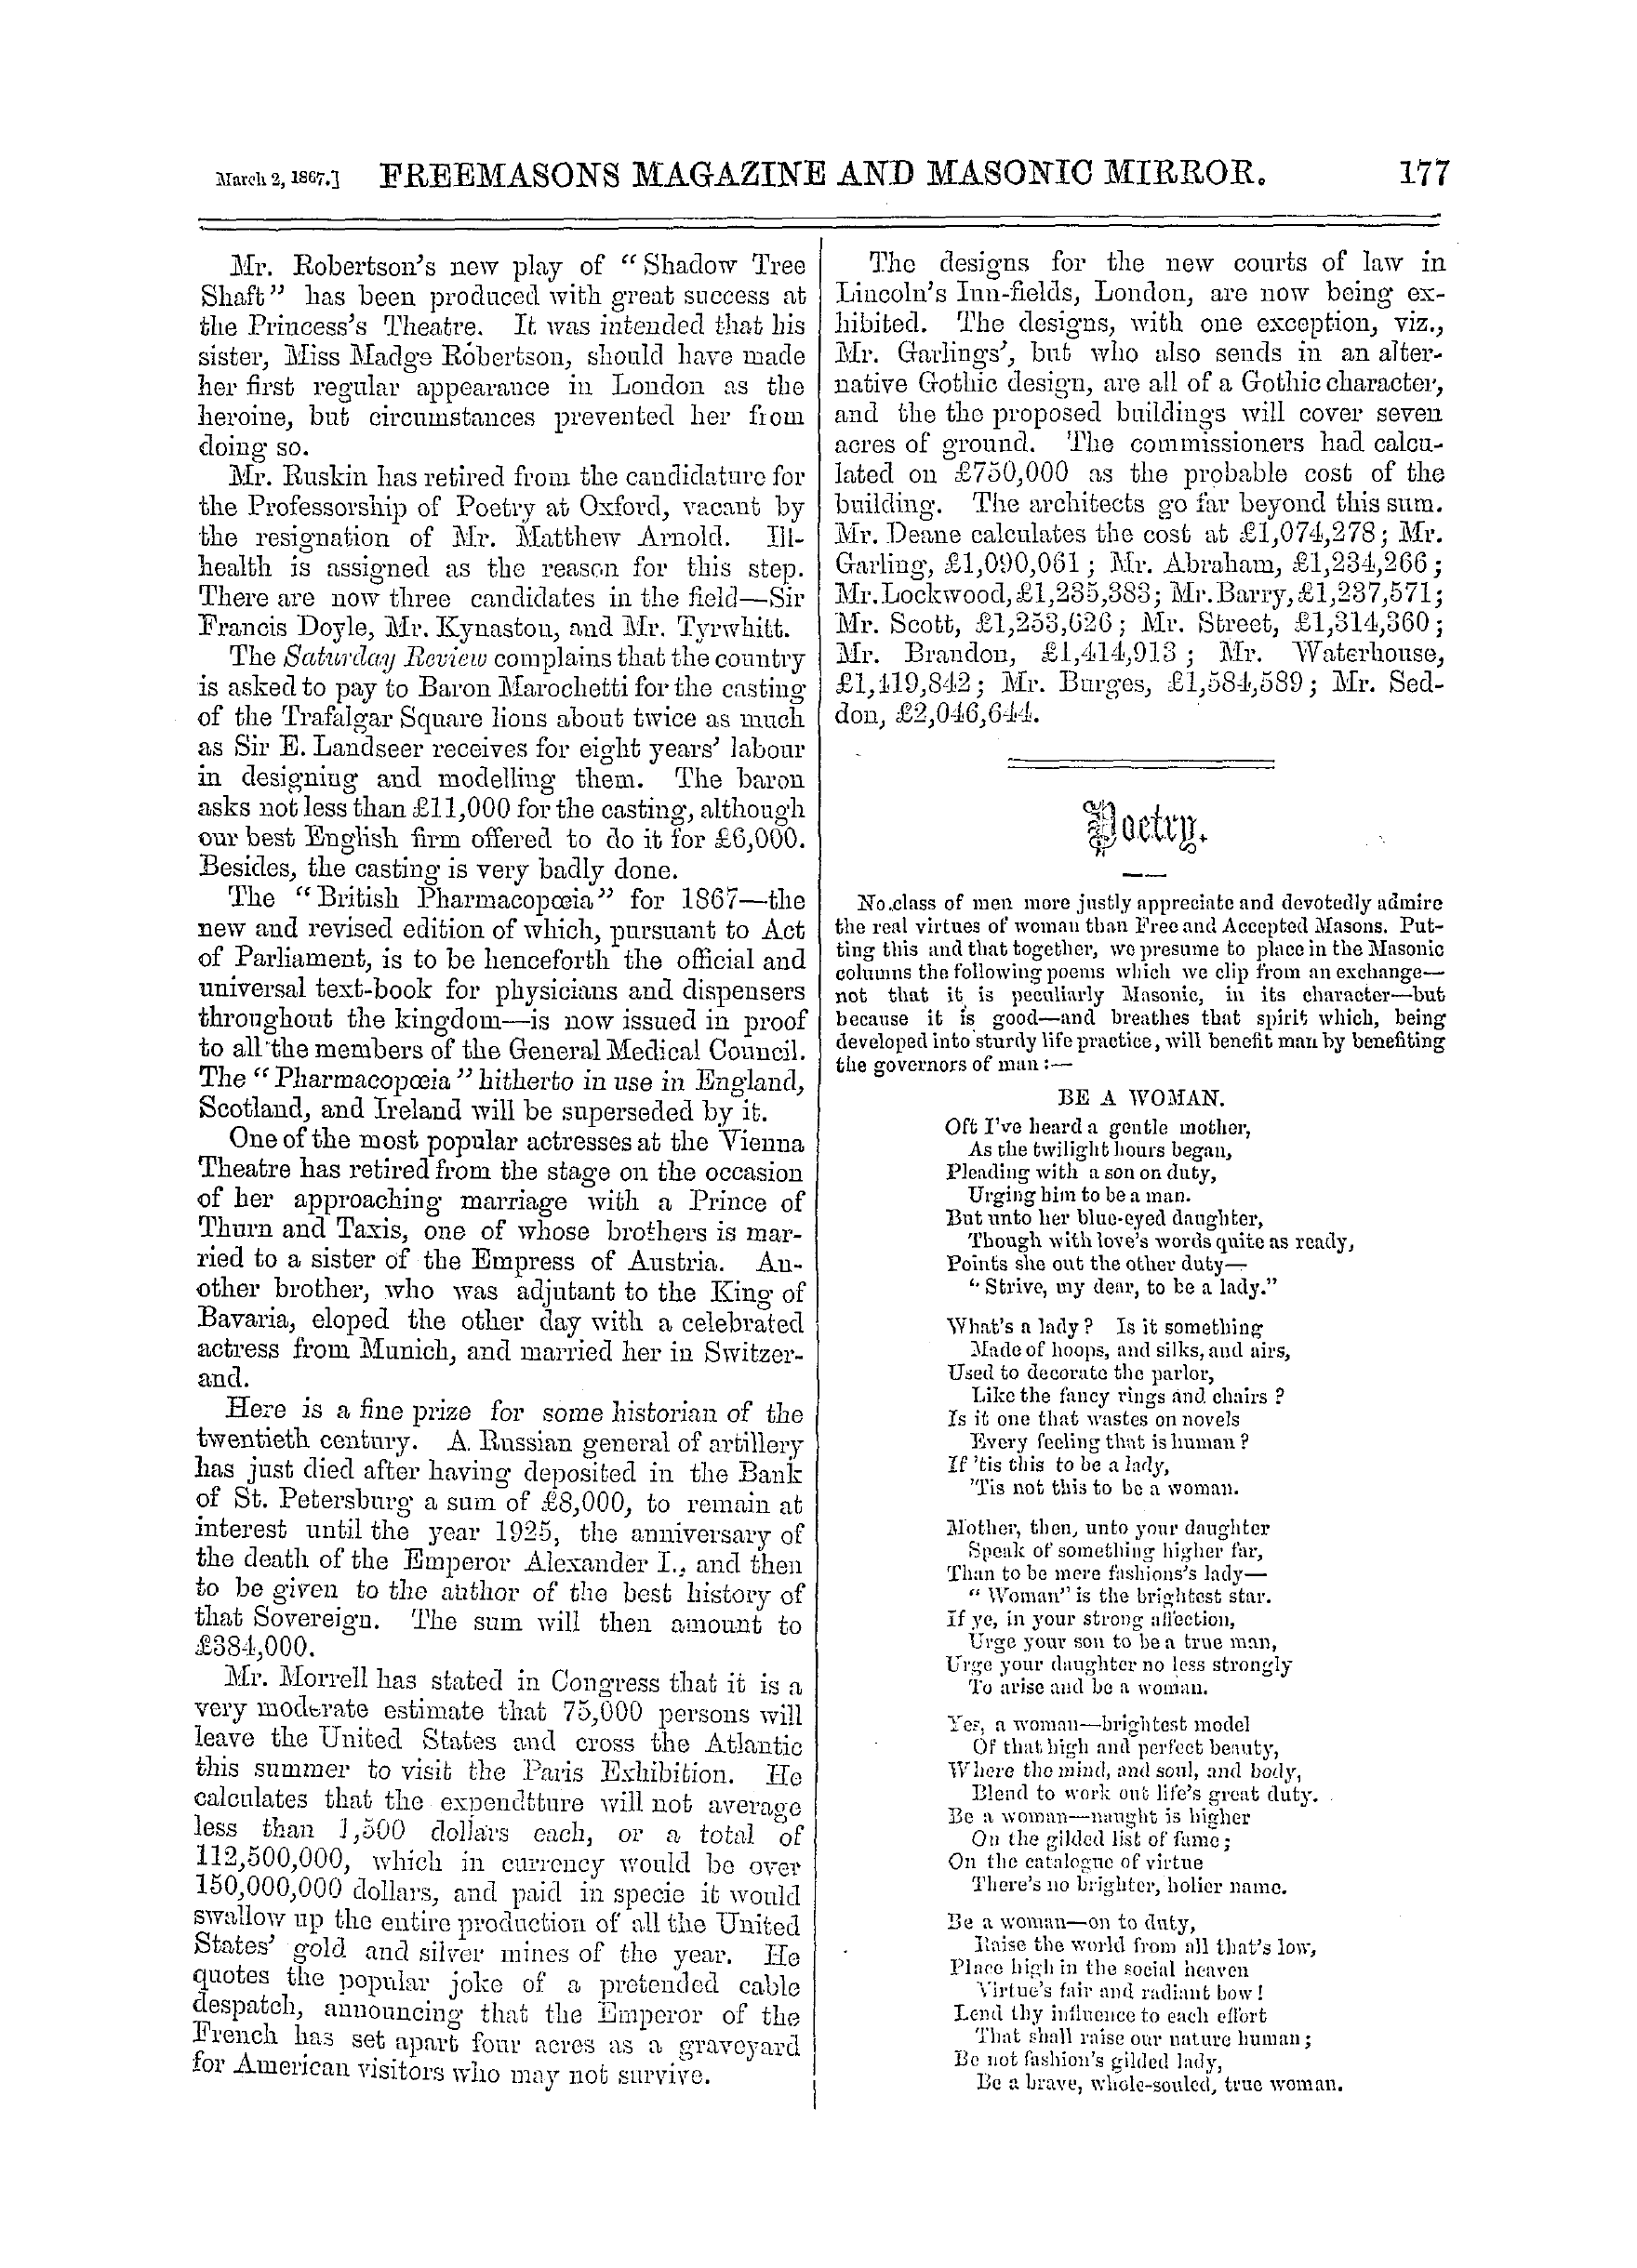 The Freemasons' Monthly Magazine: 1867-03-02 - Poetry.